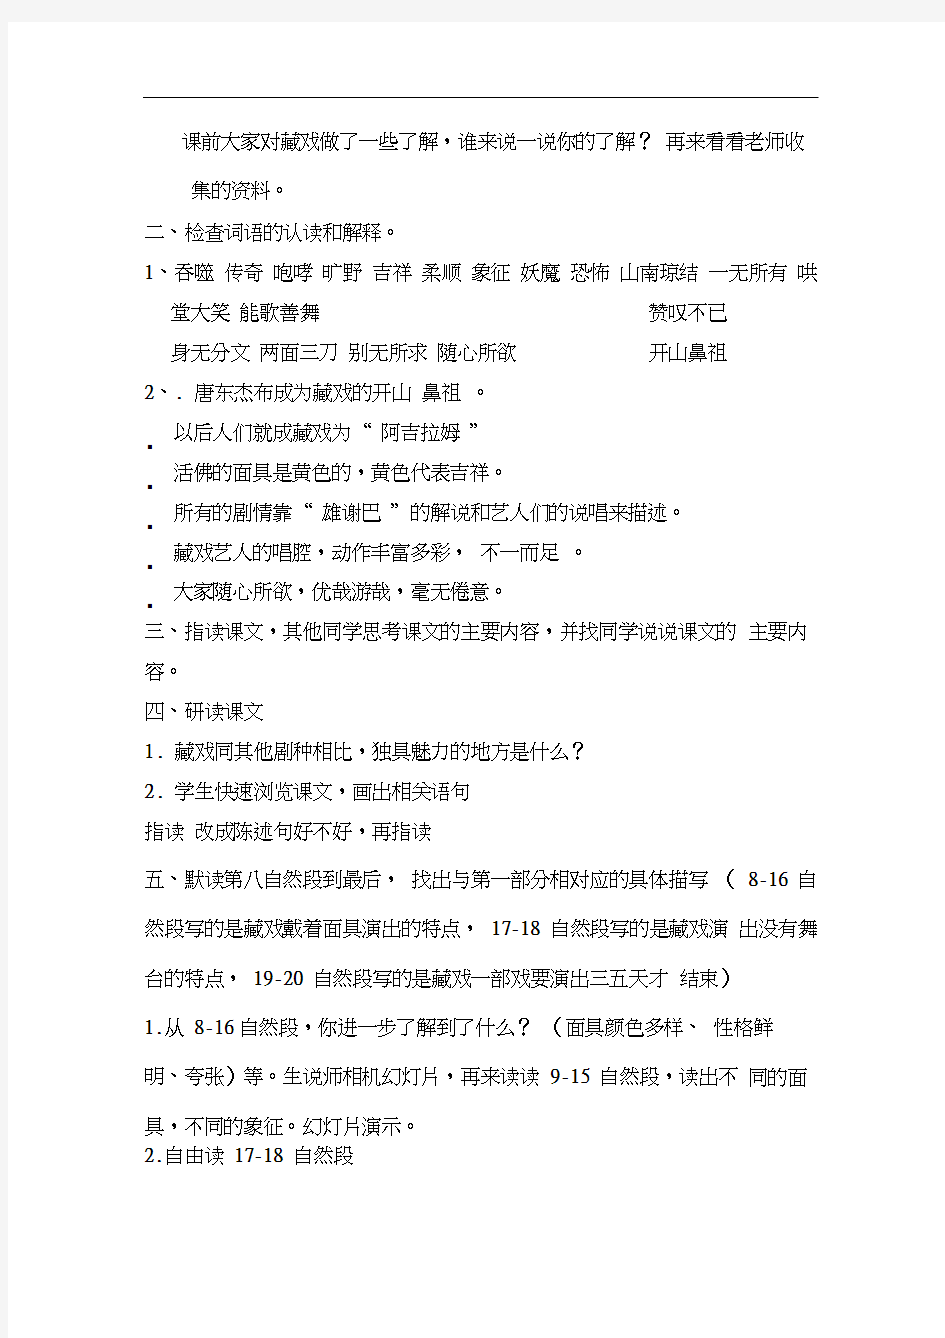 语文人教版六年级下册7藏戏(20201109165639)